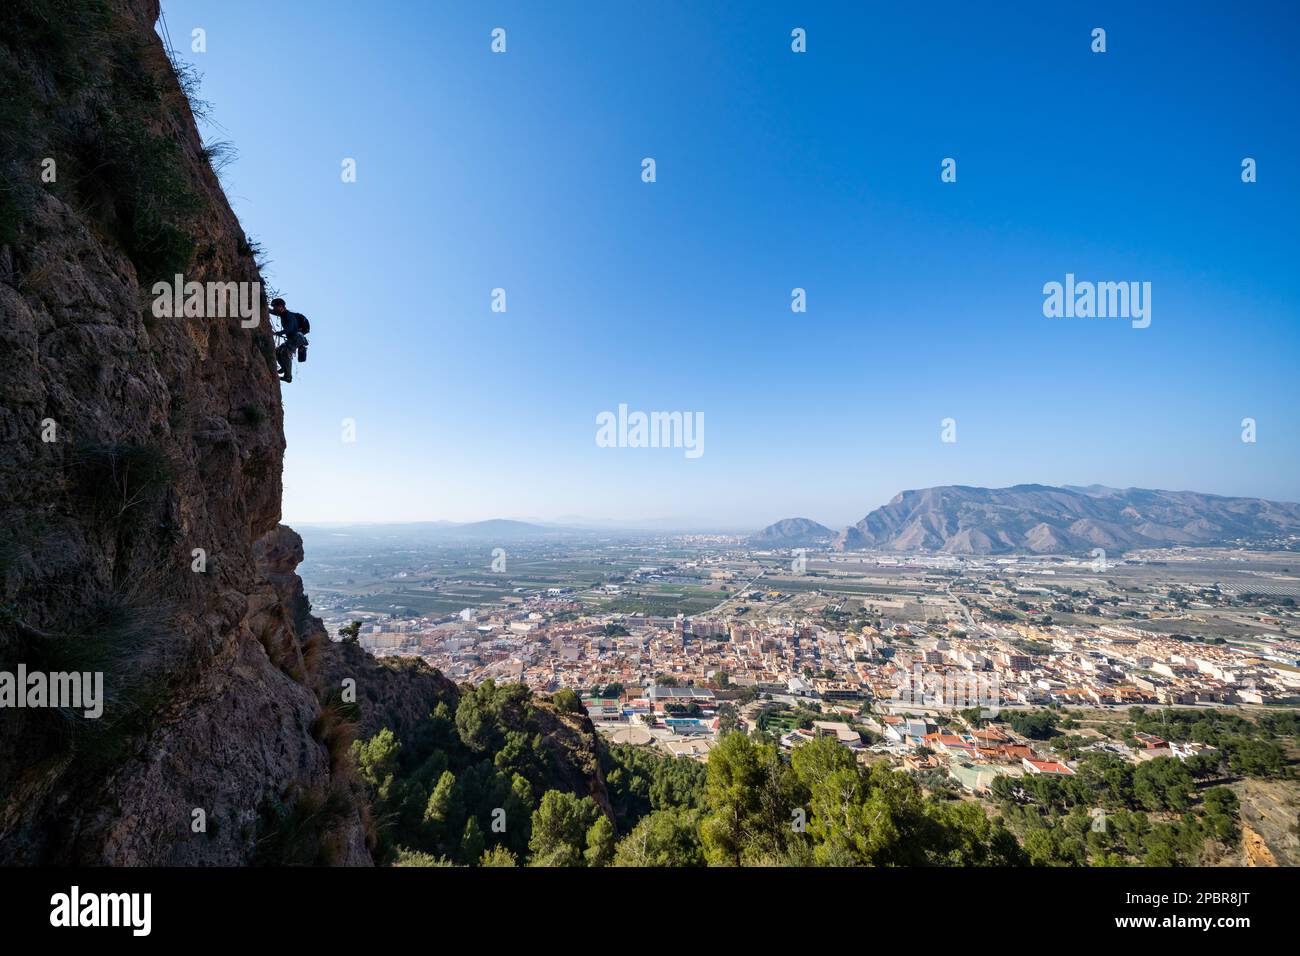 Rock climbing near Alicante, Spain Stock Photo